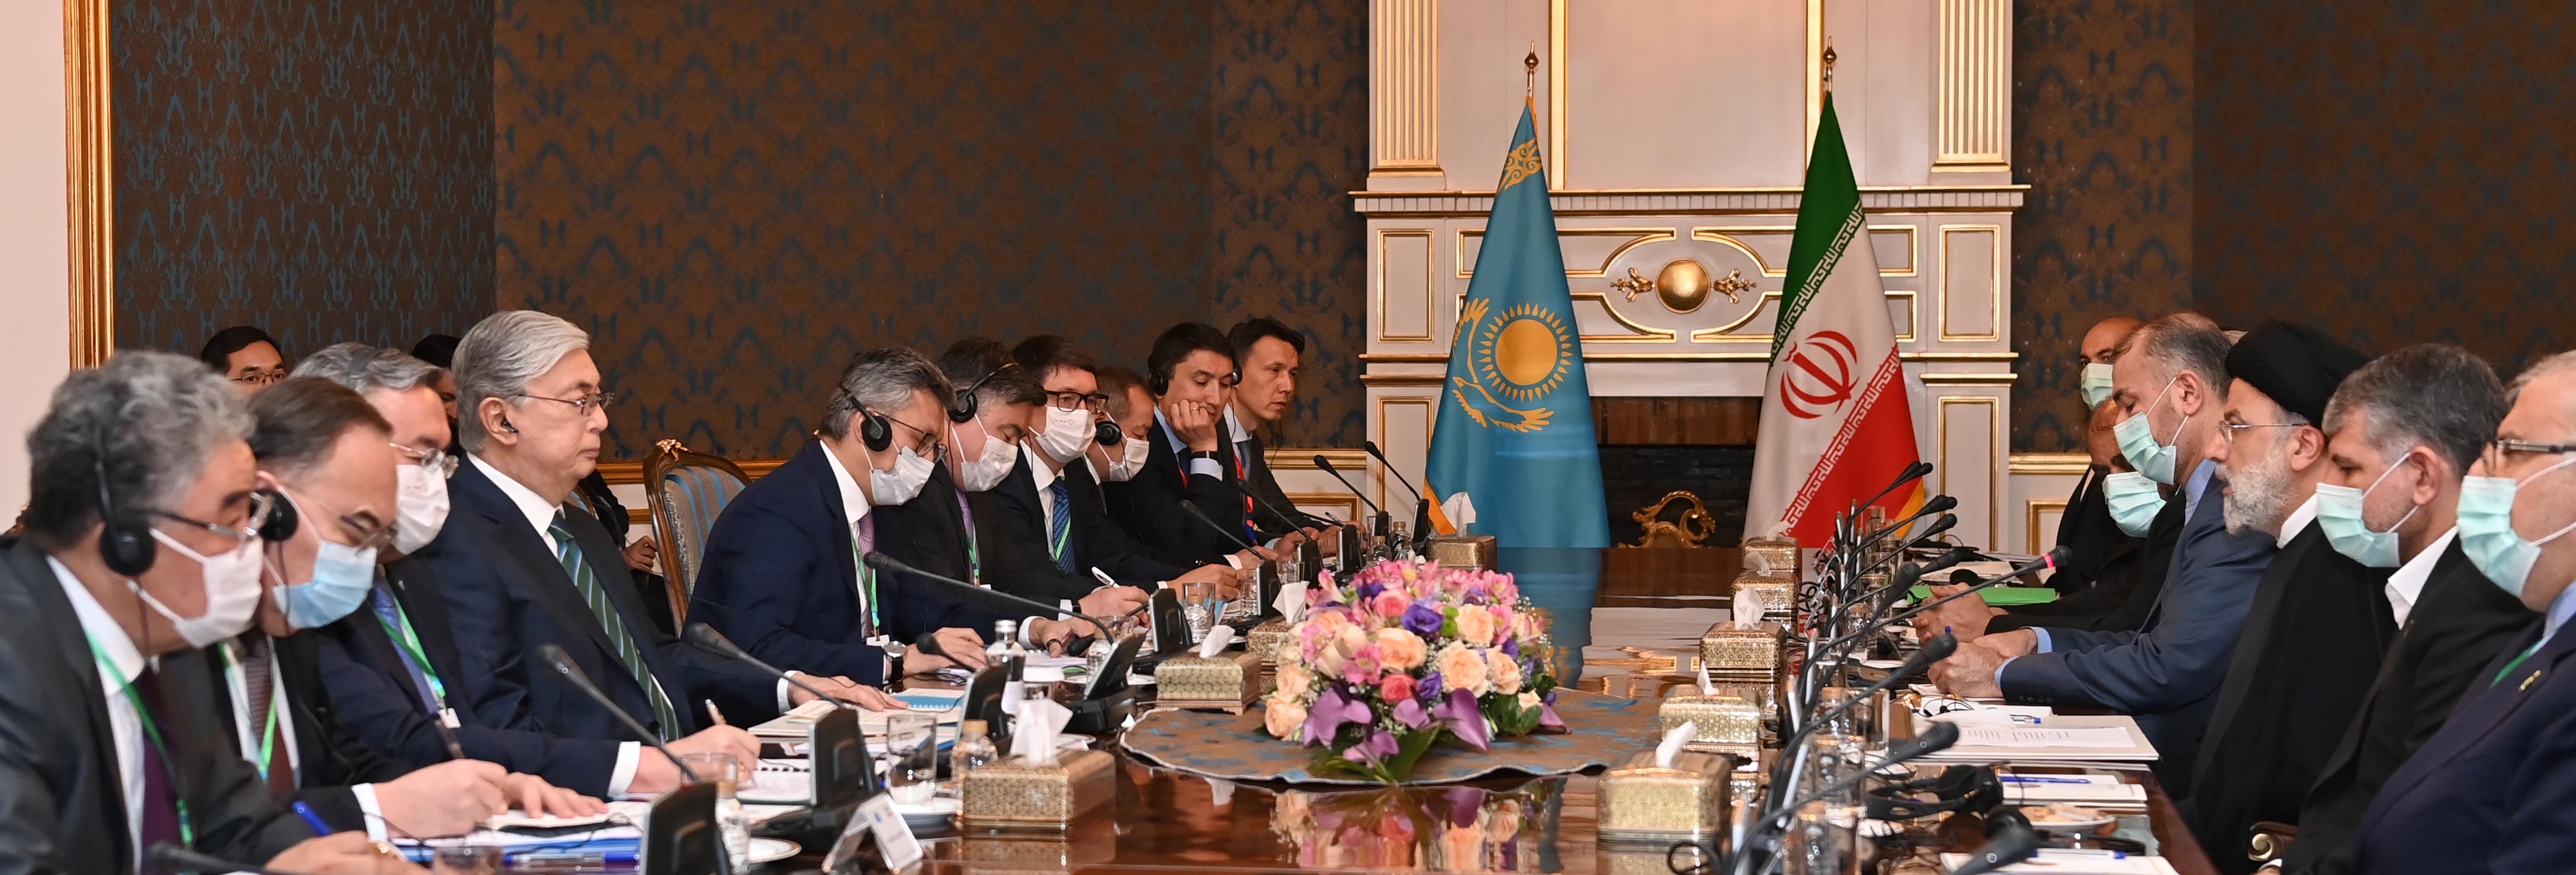 Переговоры президентов Казахстана Касы-Жомарта Токаева и Ирана Ибрахима Раиси